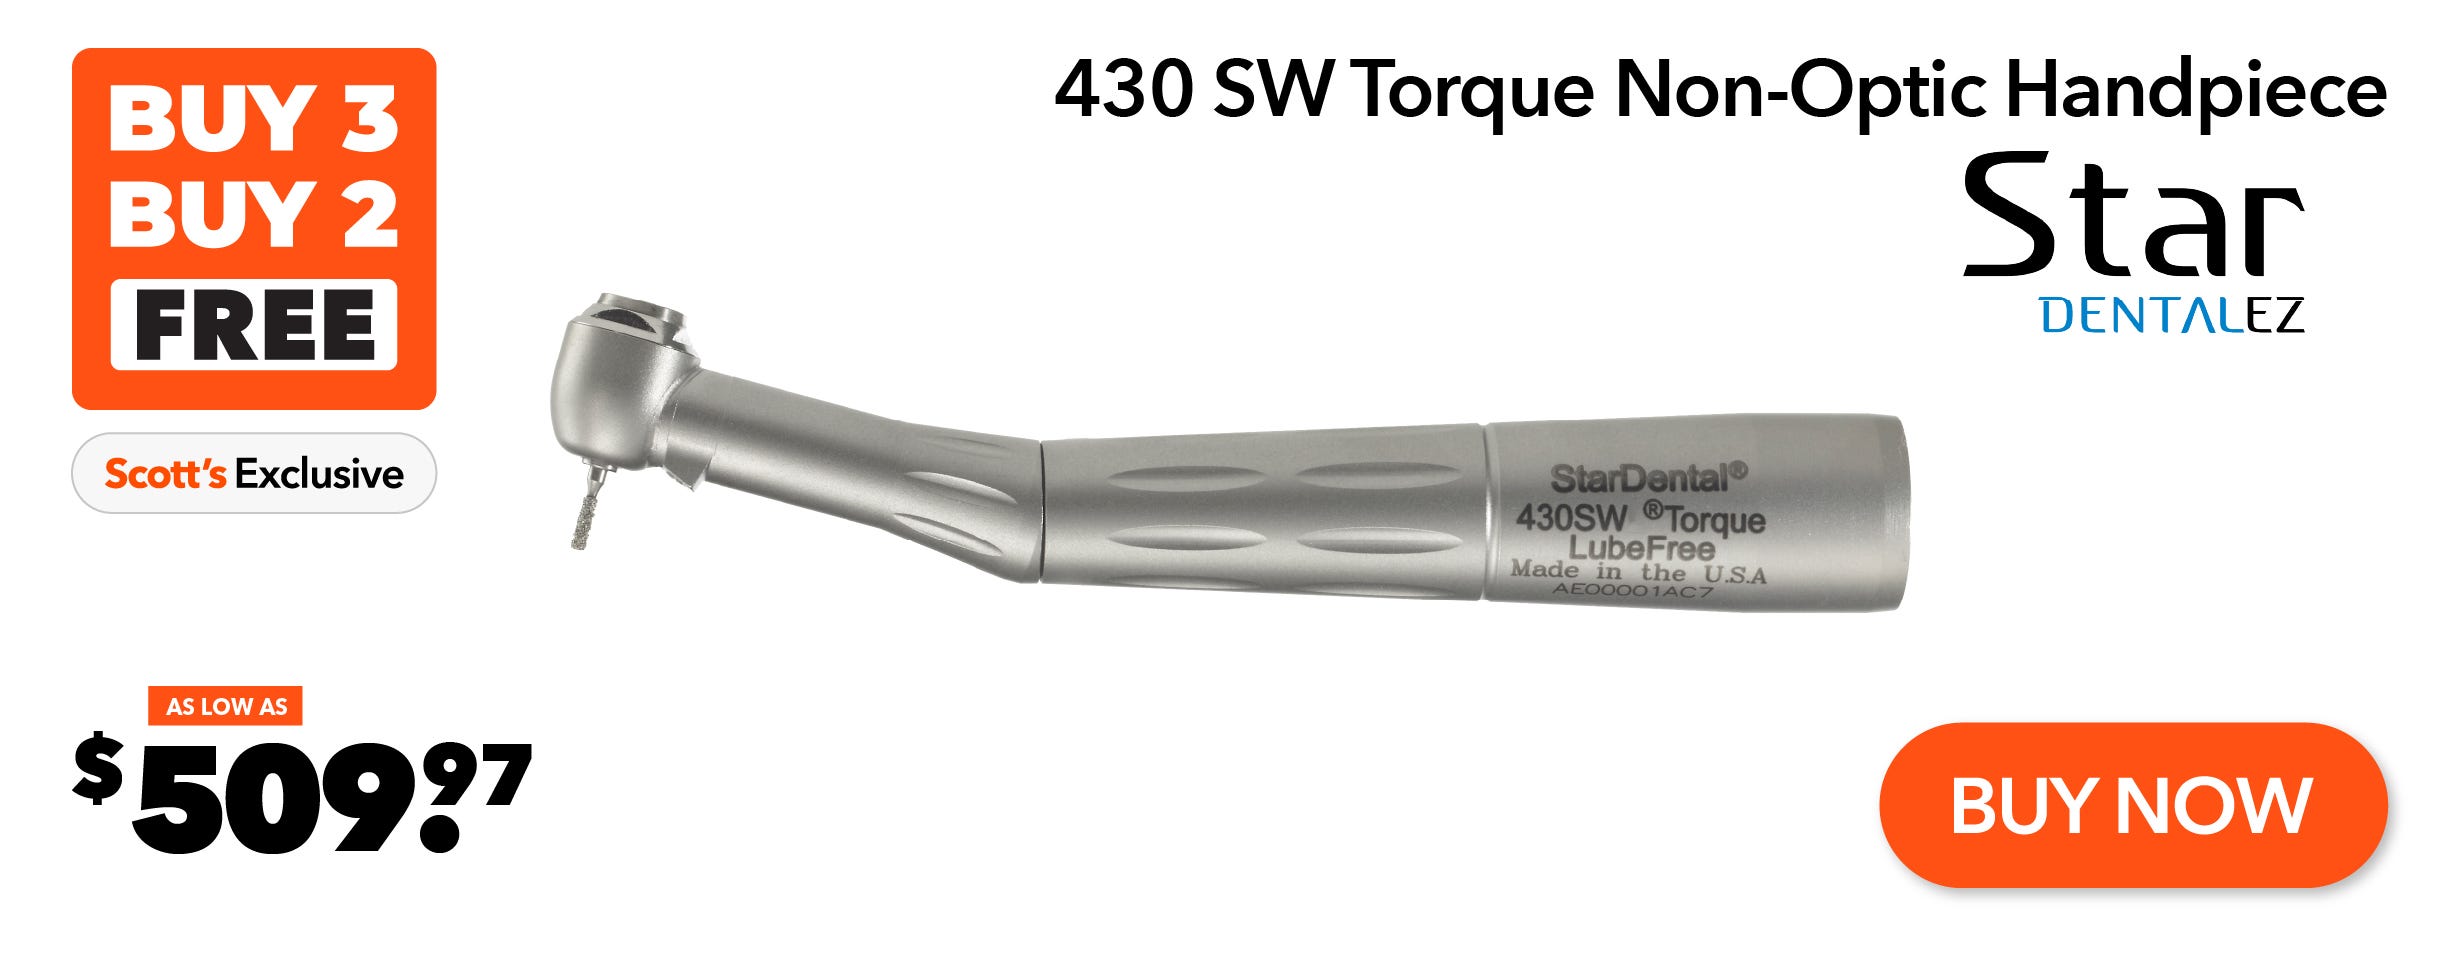 Buy 3 Star 430 SW Torque Non-Optic Handpiece Get 2 FREE!